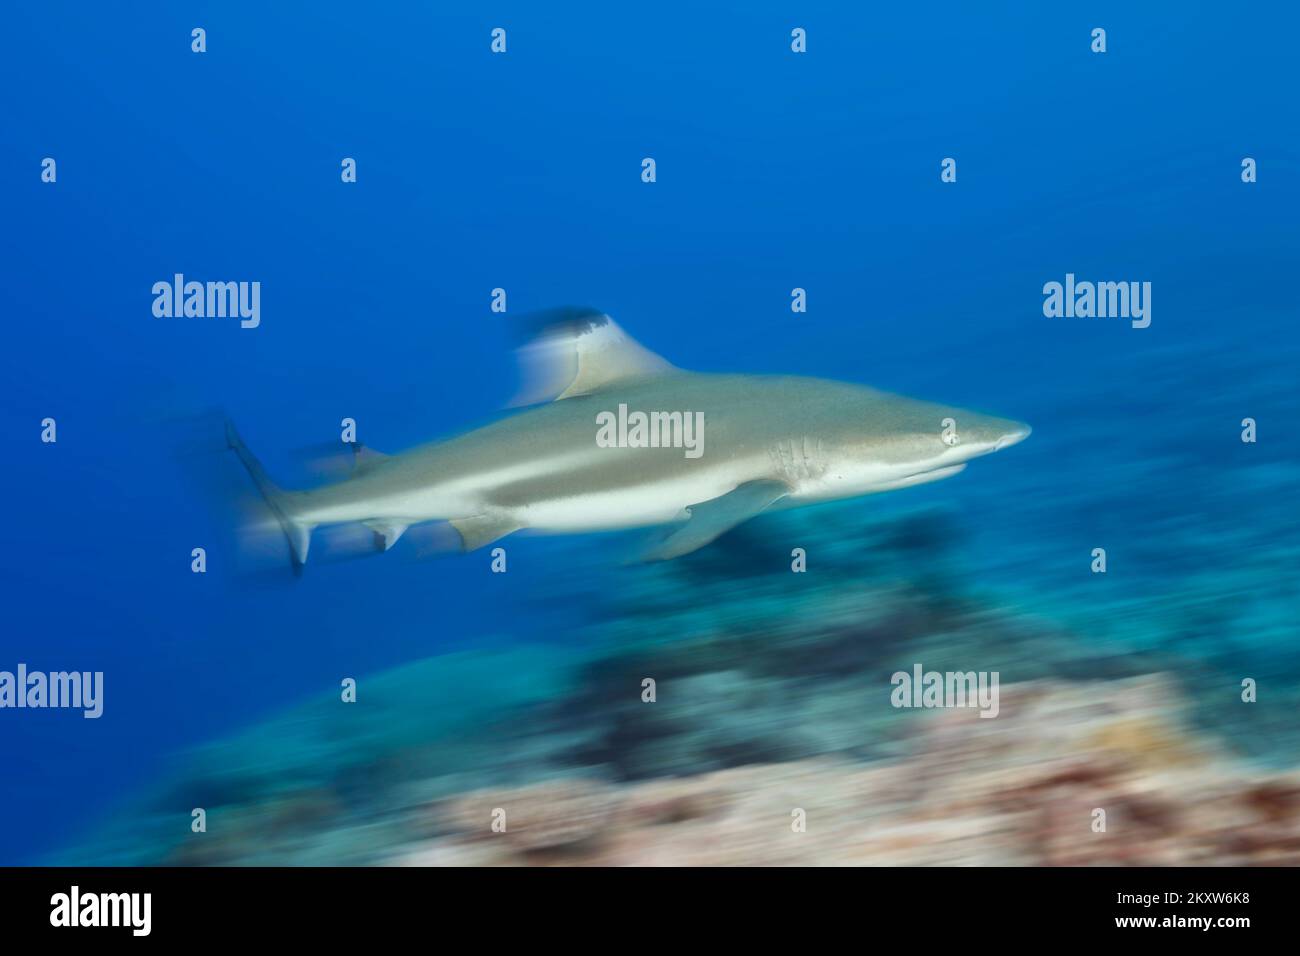 Ein bewegungsunscharfes Bild eines Schwarzspitzen-Riffhais, Carcharhinus melanopterus, Yap, Mikronesien. Stockfoto